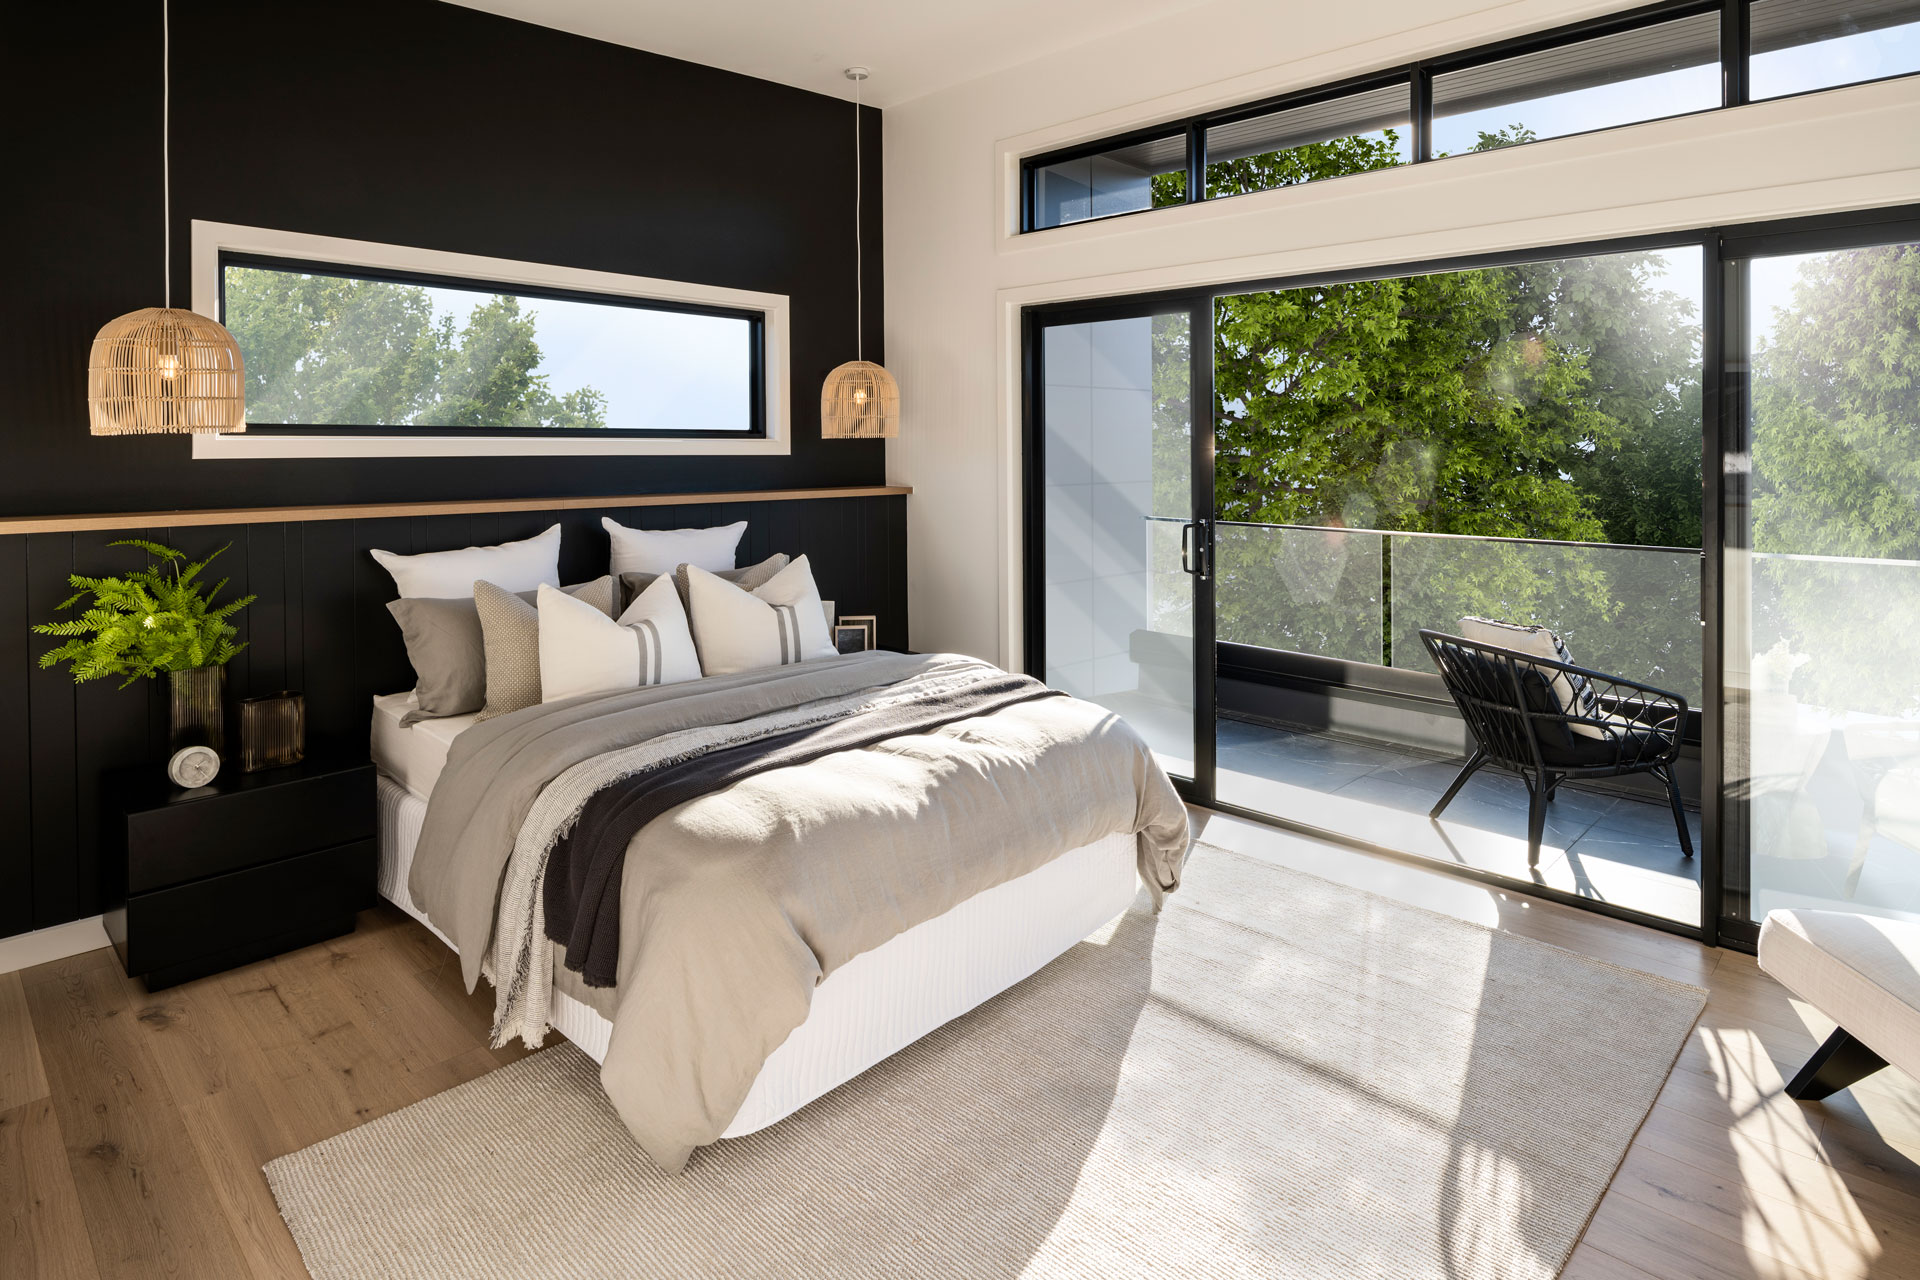 Cayman 287 master bedroom